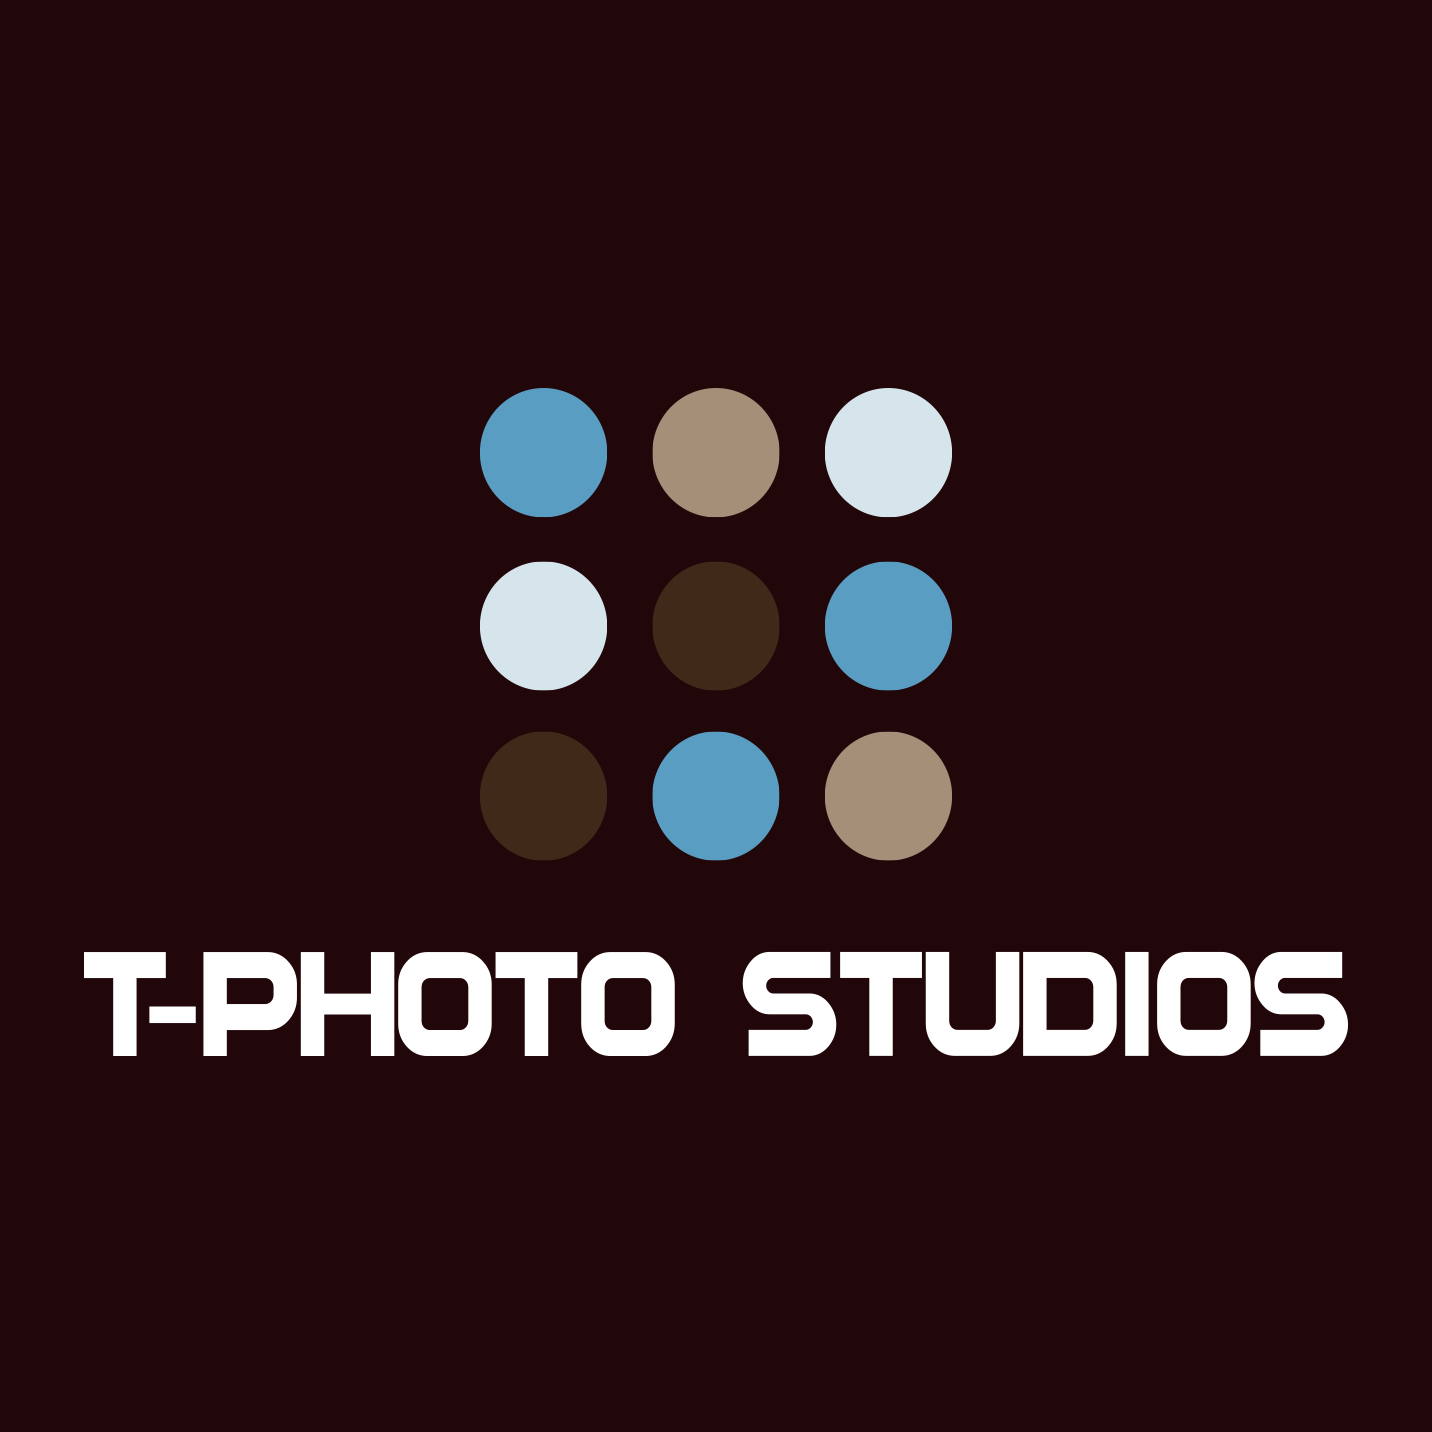 T-PHOTO_STUDIOS